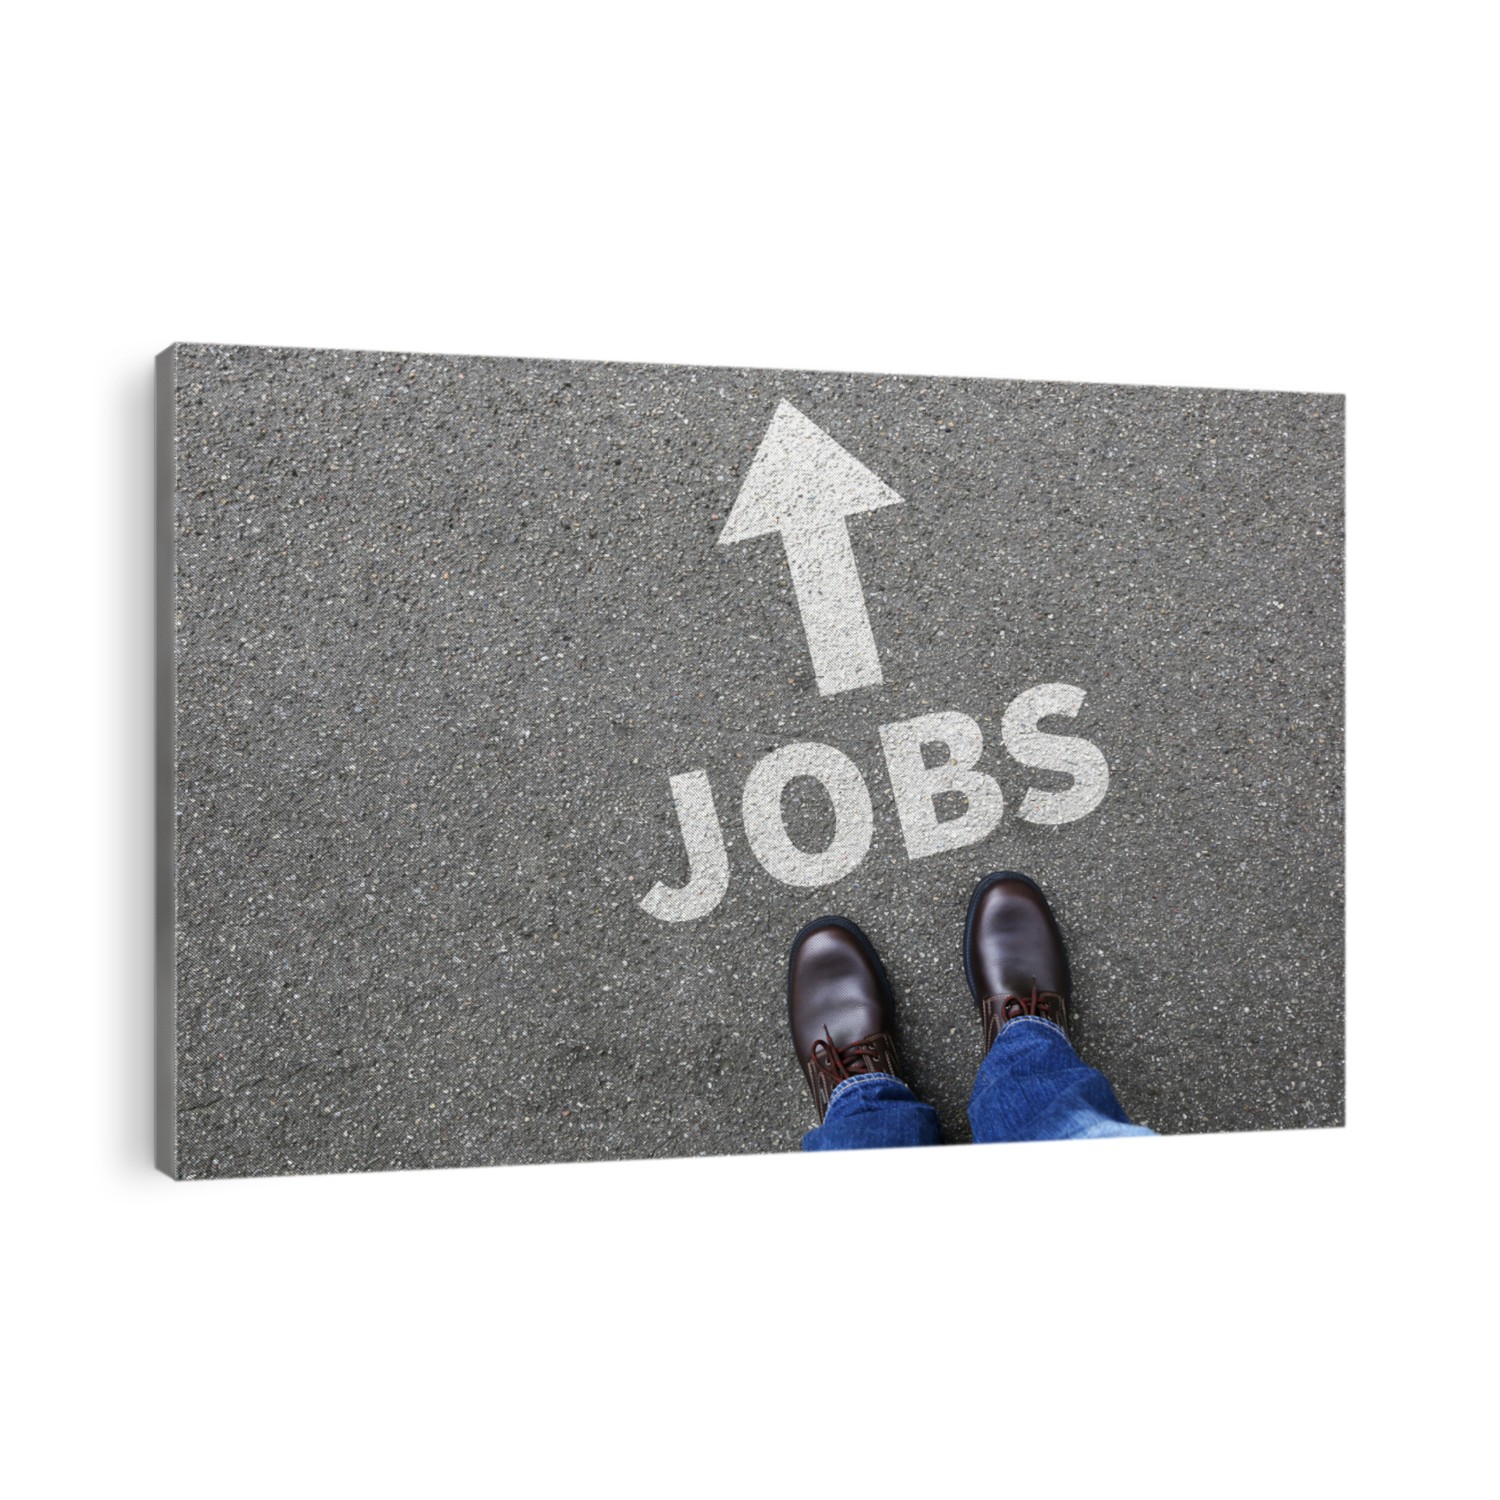 Jobs, job working recruitment employees businessman business man concept career